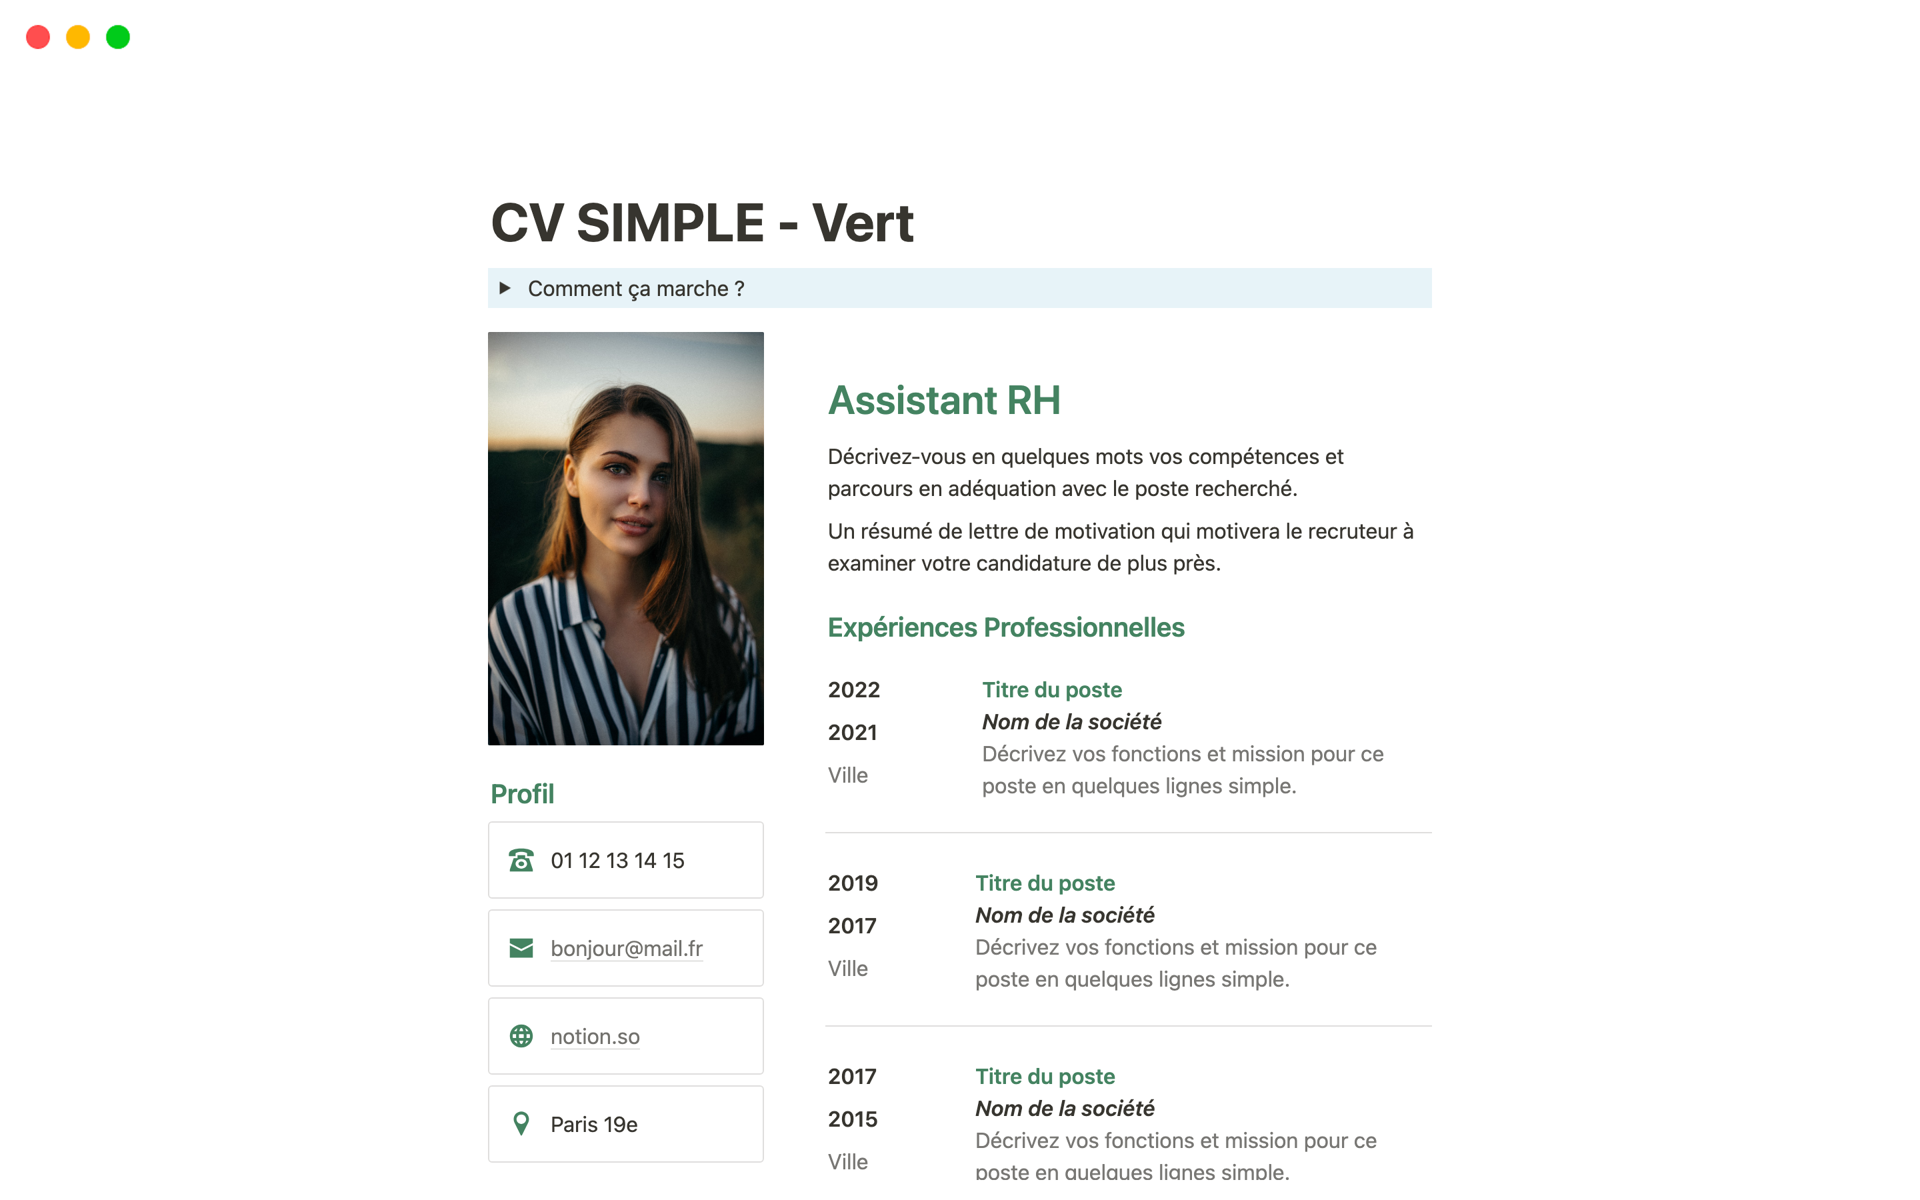 Vista previa de plantilla para CV simple vert en Français